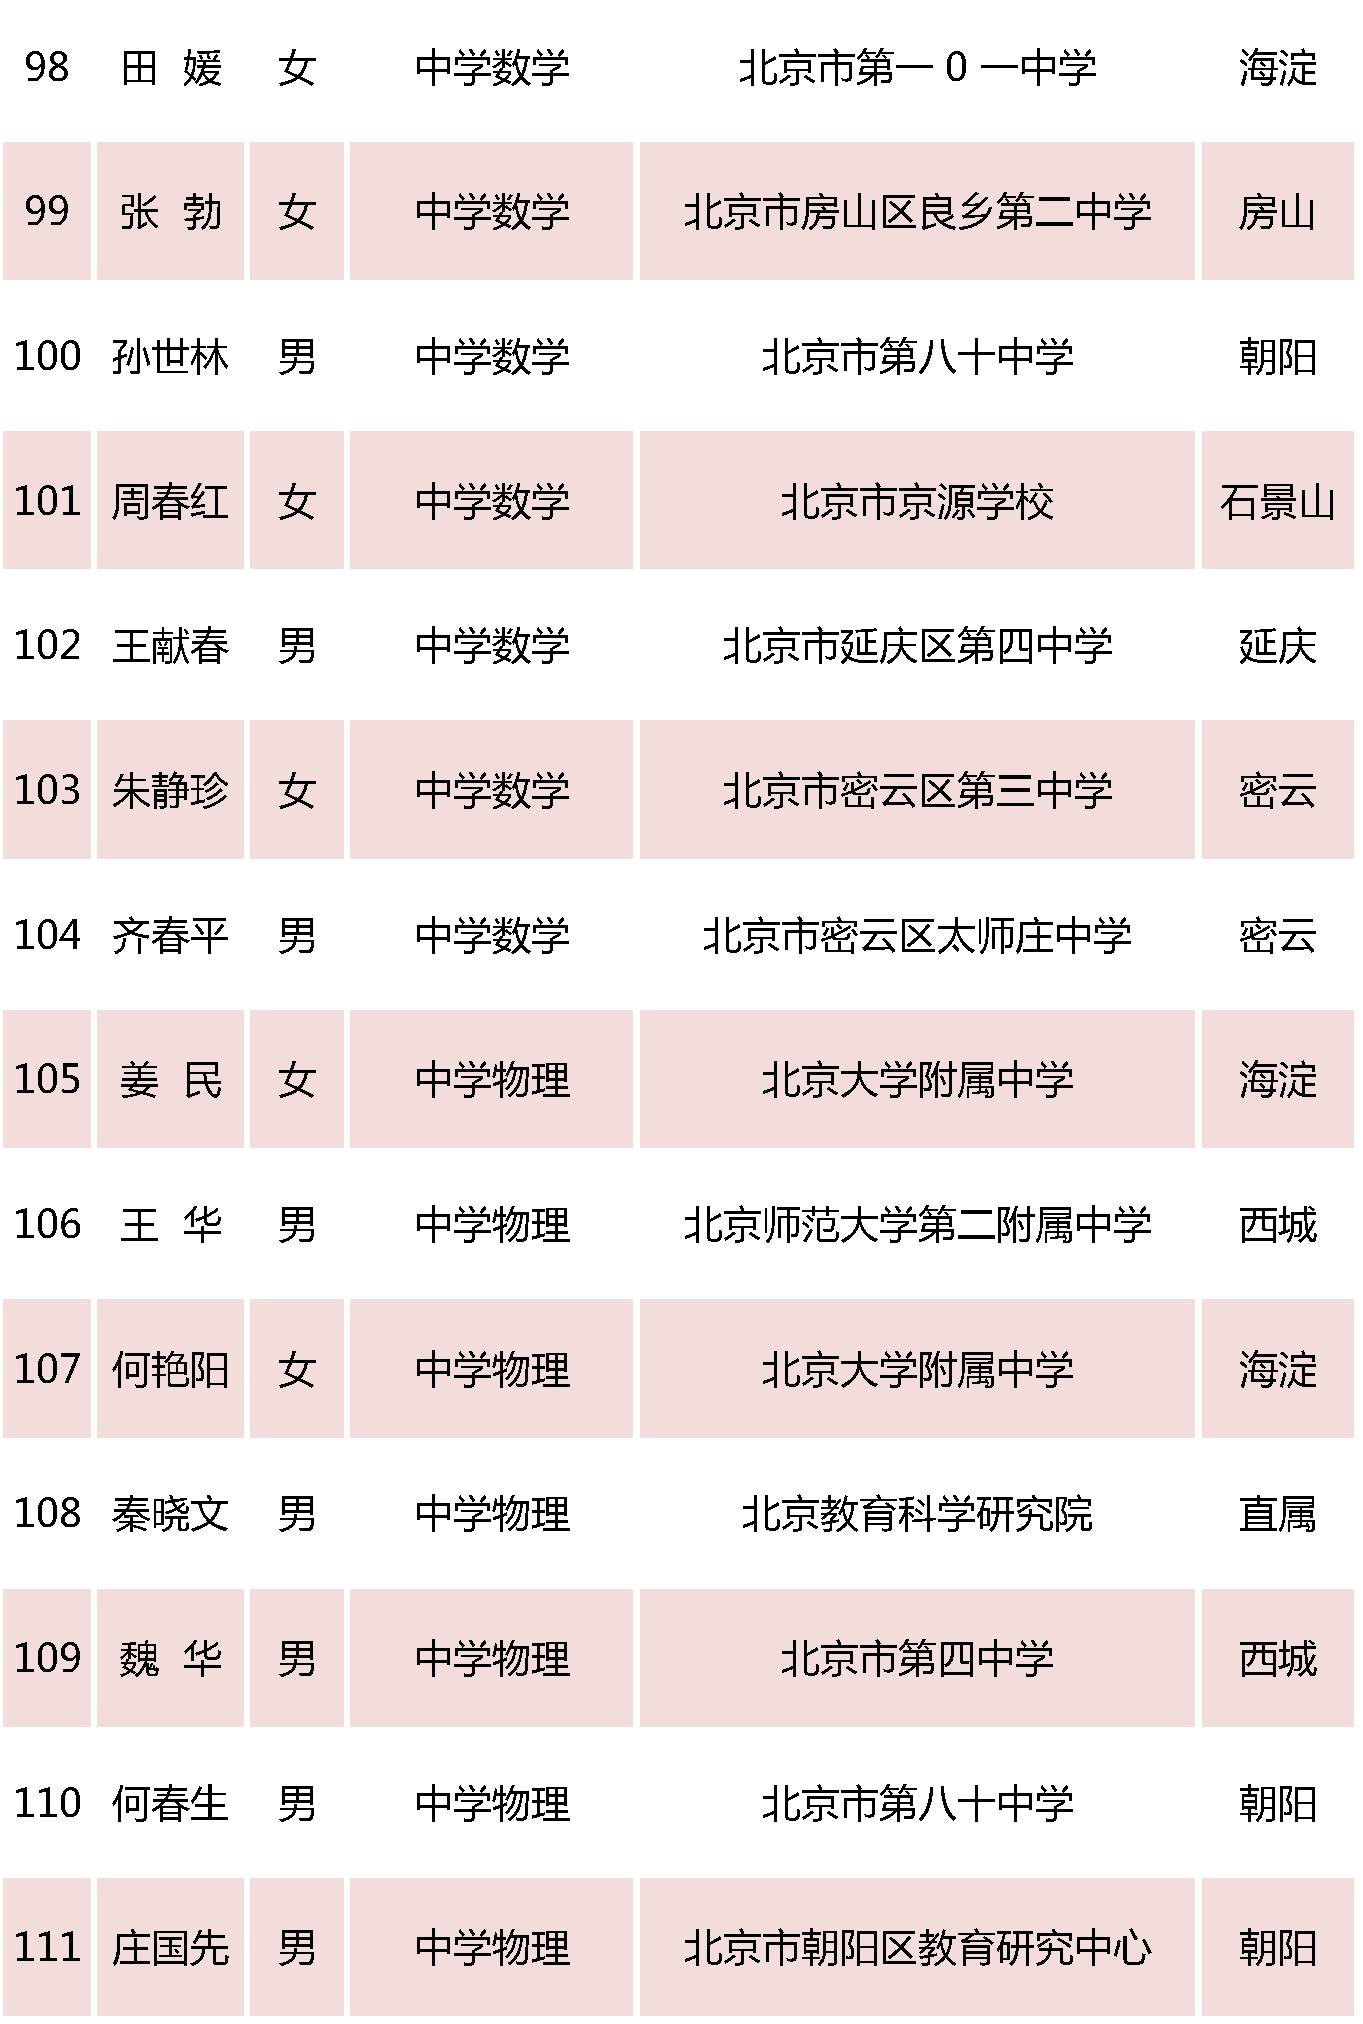 北京特级教师名单10